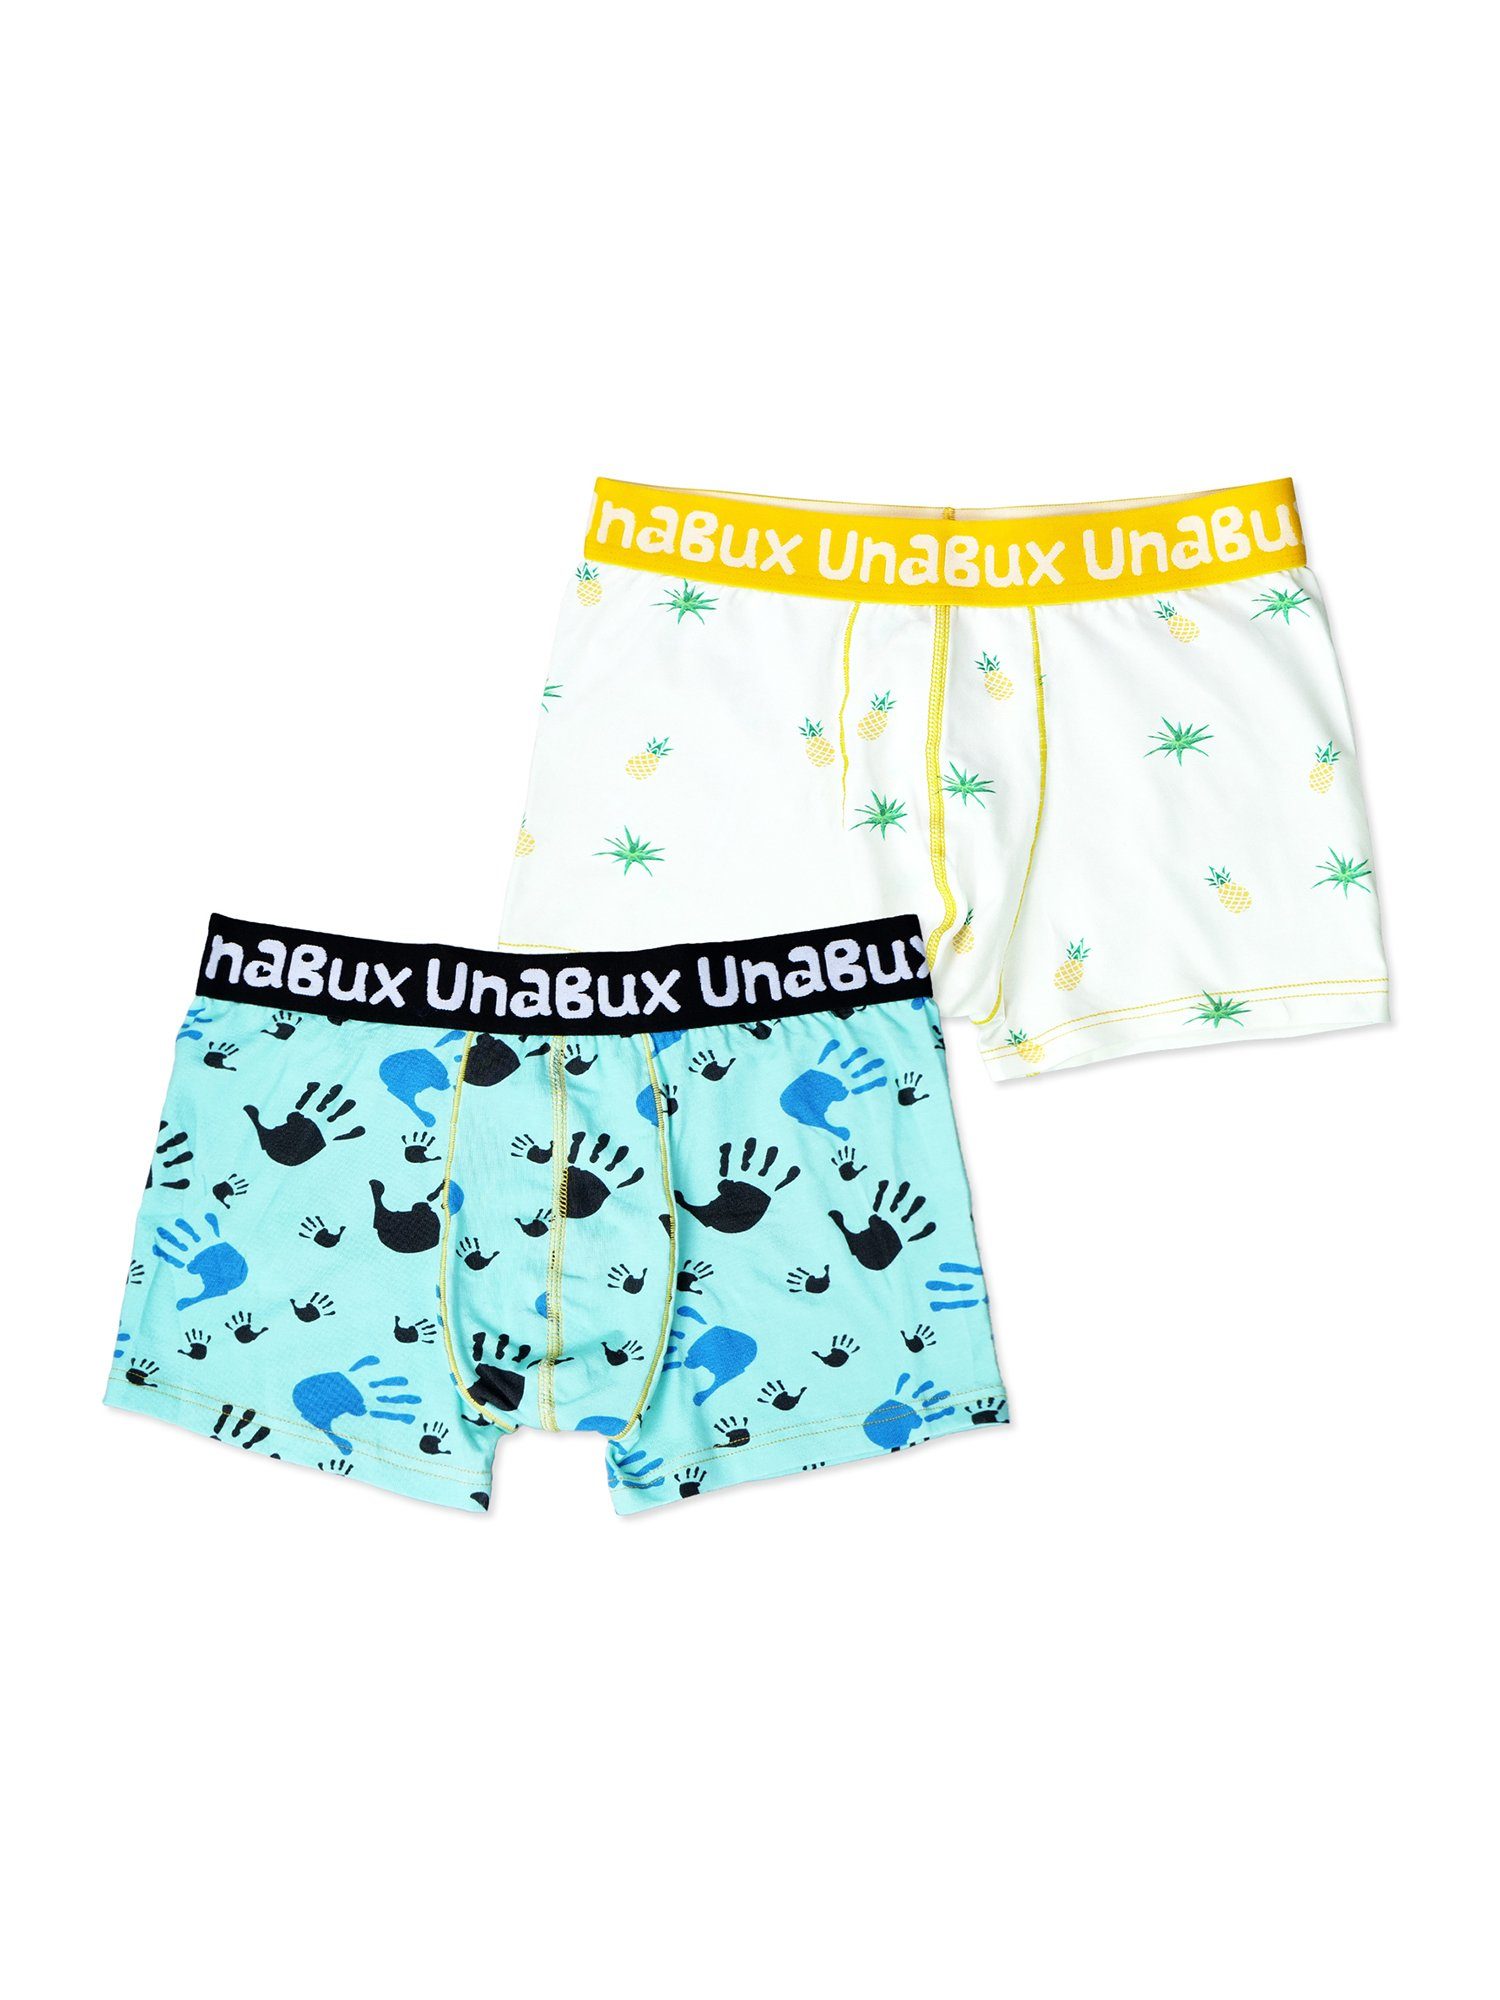 UnaBux Retro Pants Boxer Briefs FIVE FINGERS Mix (2-St) COSTA